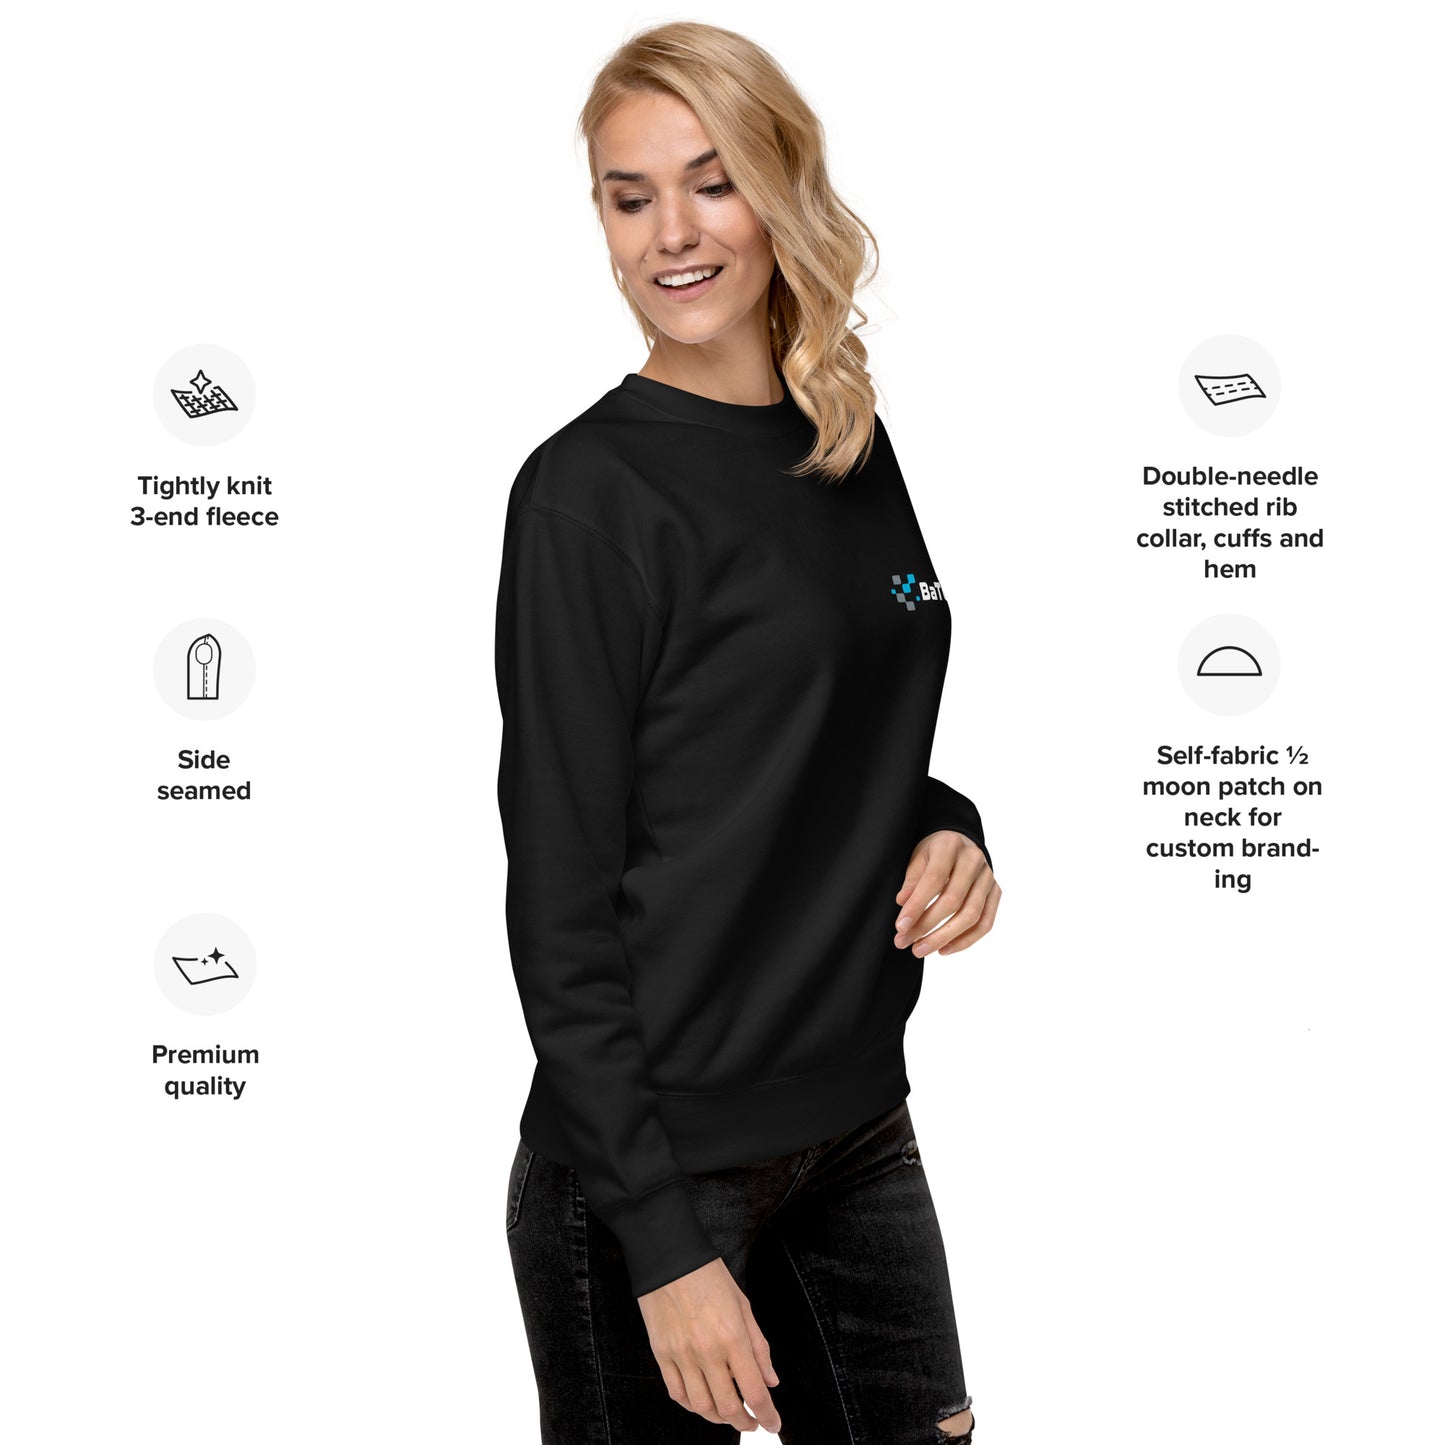 BaTCC Unisex Premium Sweatshirt